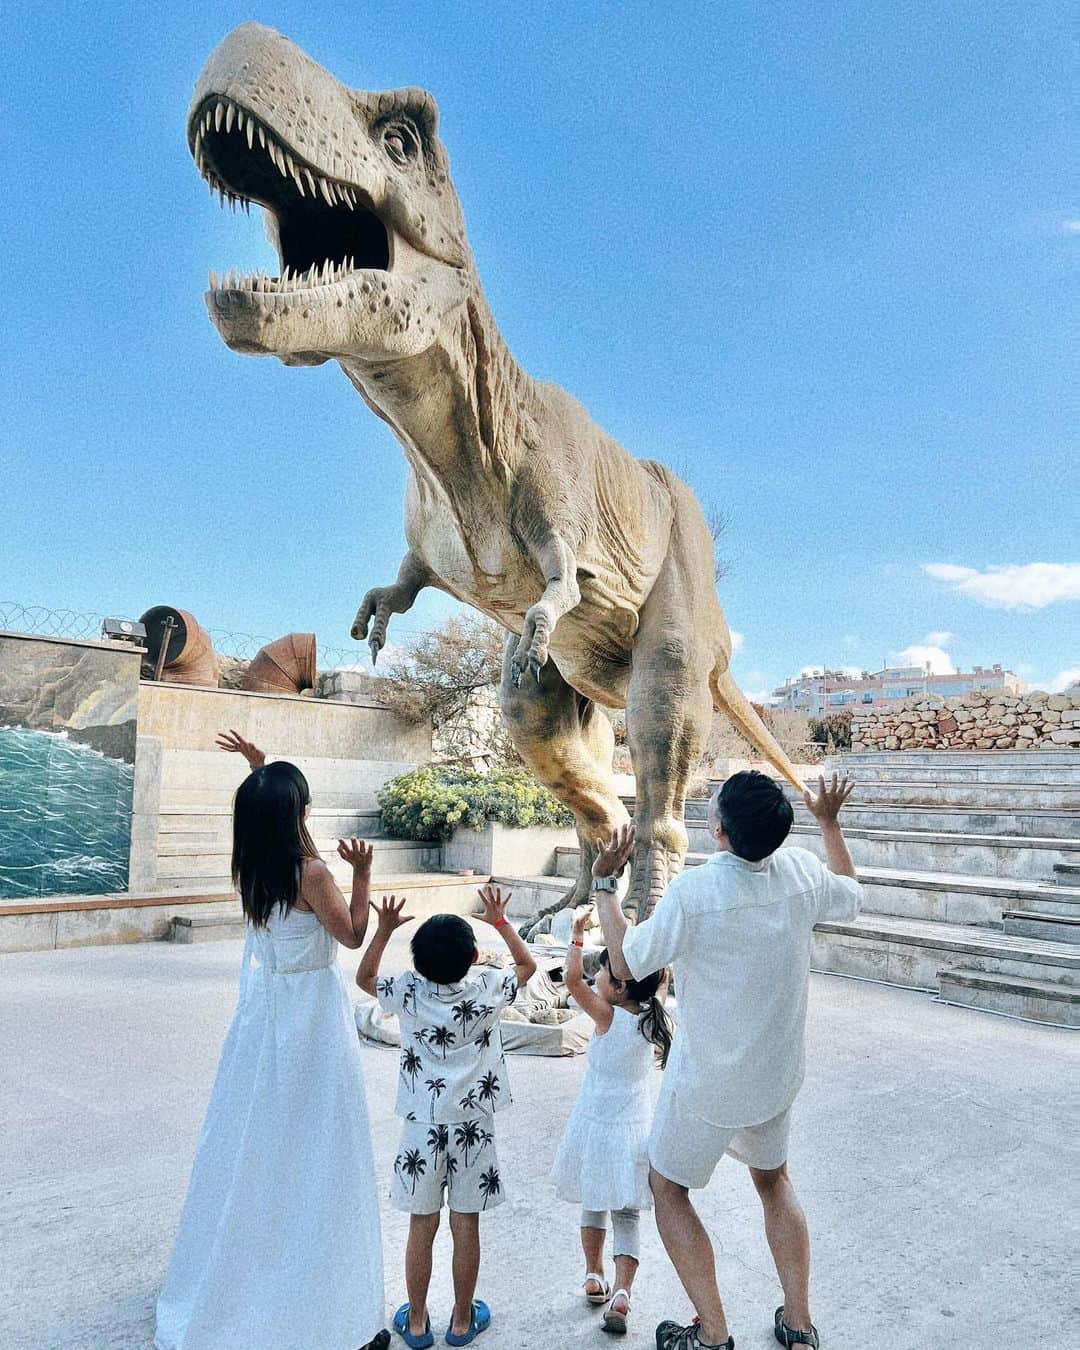 Remiのインスタグラム：「The Natural History Museum of Crete🇬🇷 ギリシャ最大の島、クレタ島では自然史博物館へ🦕 ギリシャやクレタ島に住んでいた巨大な恐竜の模型や動物たちの剥製が沢山あり、リアルな世界感🐫🦜🦣 子供が楽しめる仕掛けが沢山あって、涼しく1日楽しめました。  個人的にはクレタ島のマンモス象の牙が顎から生えてるのが衝撃でした😳  また、日本と同じく地震大国ギリシャならではの地震体験では、阪神淡路大震災の揺れを実際に体験し、その壮絶さに言葉を失う我々…。子供たちも衝撃を受け、改めて自然災害の怖さや防災の話をするきっかけになりました。 日本から中々行ける場所ではないけど、行く機会があればおすすめです🦖  ------------ 📍#Crete , #Greece  🦕 #NaturalHistoryMuseumofCrete ⚓️ @msccruisesofficial  🛳  #mscsplendida  👨‍👩‍👧‍👦 @hh.channel2023  🗓 2023.10.28-11.23  世界一周日記はアメブロ& @hh.channel2023 にて🎬  #クレタ島 #クレタ自然史博物館 #ギリシャクルーズ  #エーゲ海クルーズ #クルーズ旅 #子連れクルーズ #子連れ旅行 #子連れ世界一周 #世界一周中 #世界一周旅行 #NaturalHistoryMuseum  #worldroundtrip #msccruises #cruiselife #familycruise #remi_world2023」